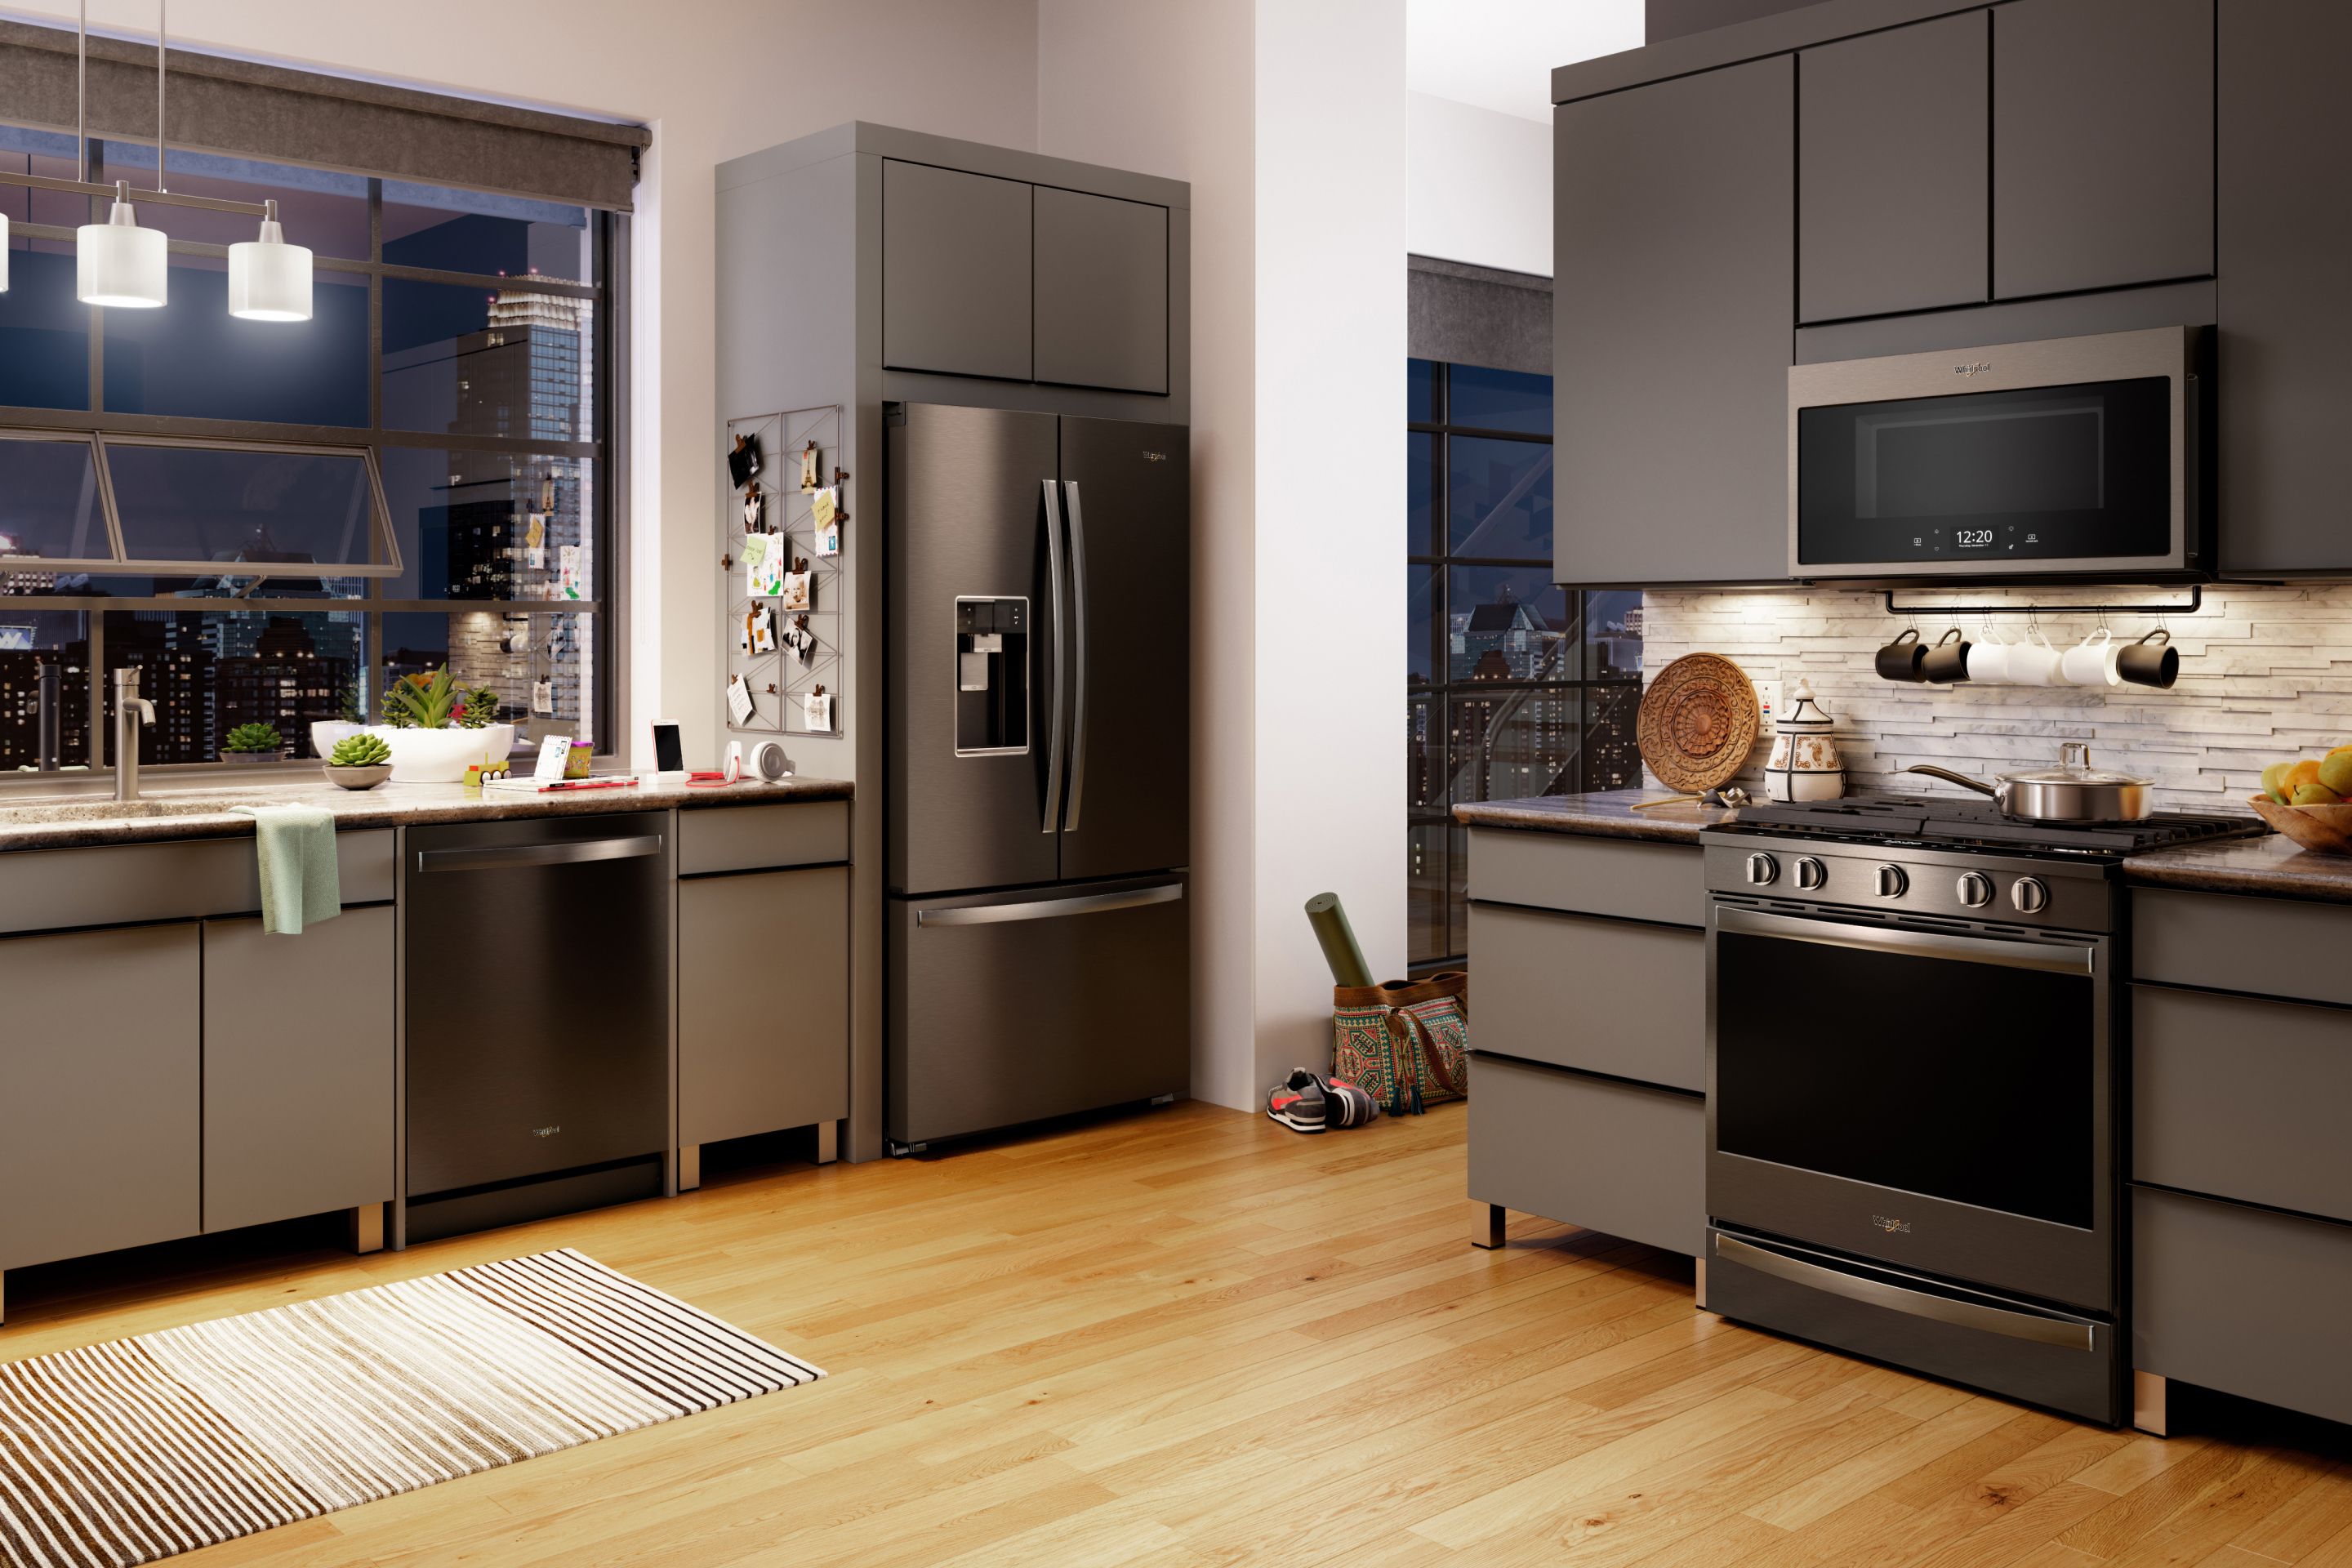 kitchen design stainless steel appliances